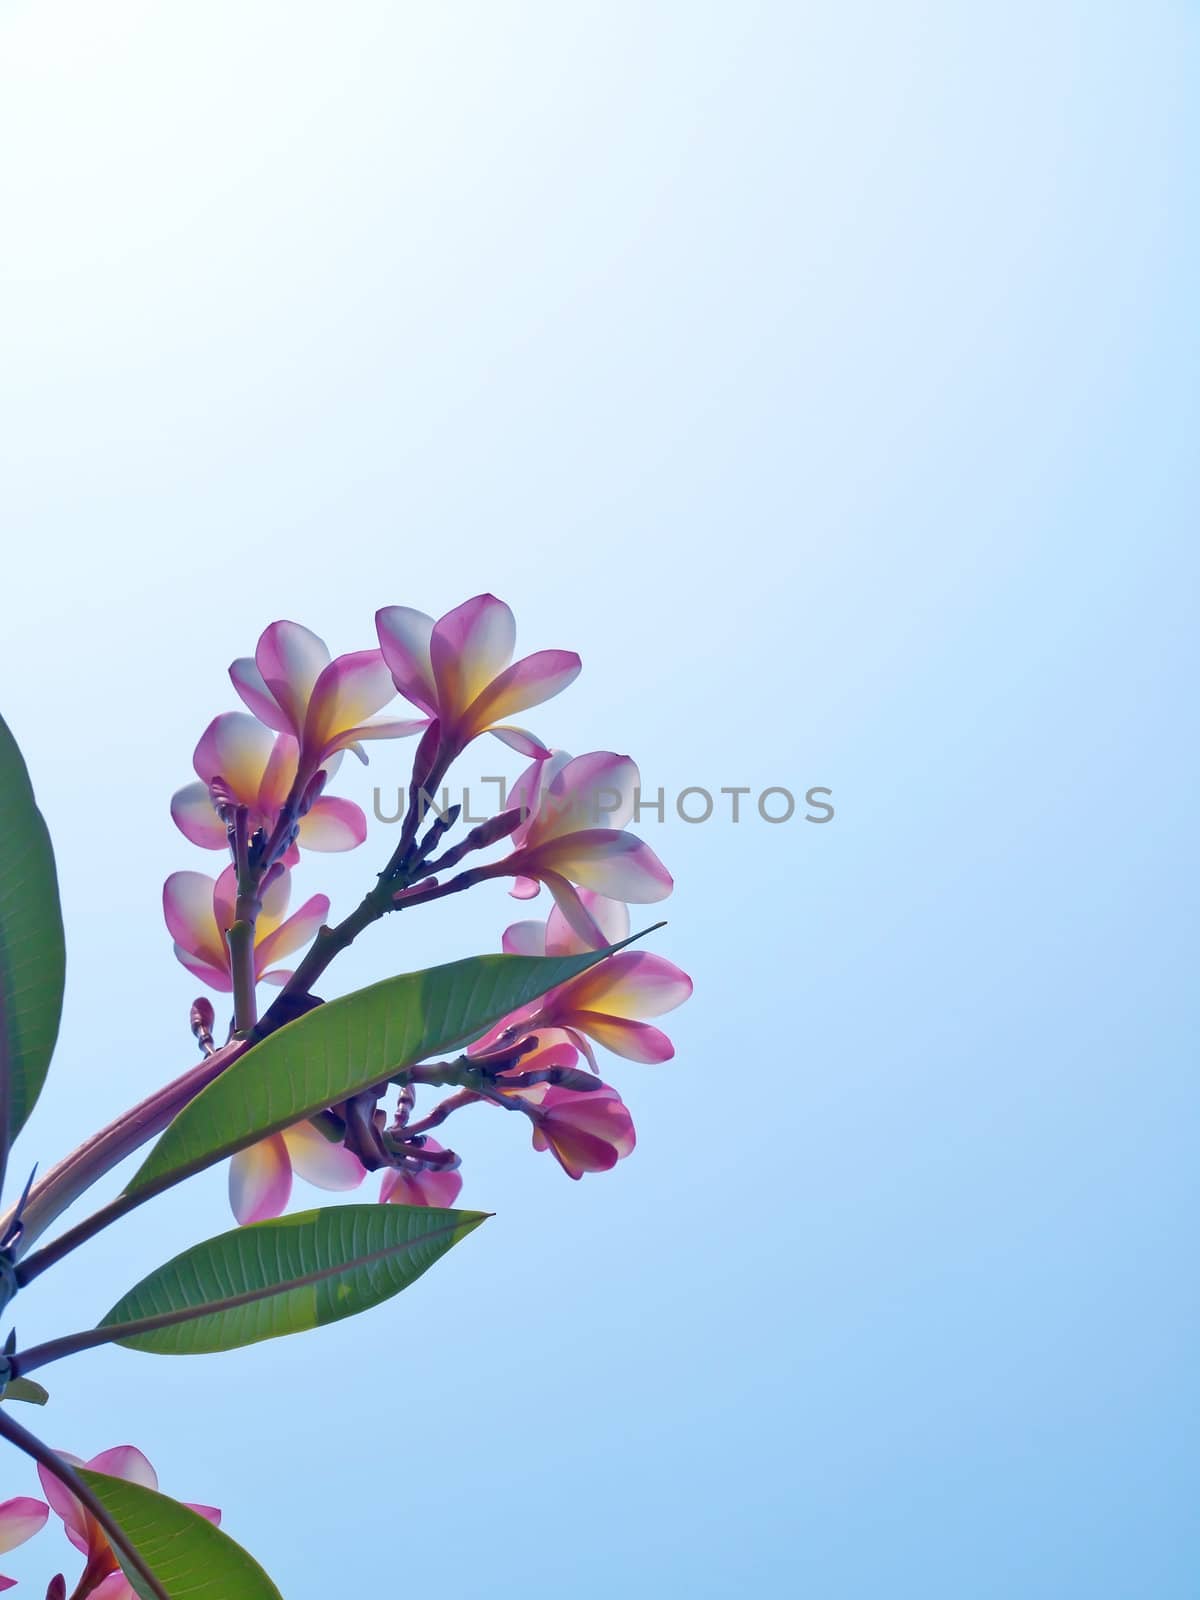 Beautiful frangipani (Plumeria) with blue sky